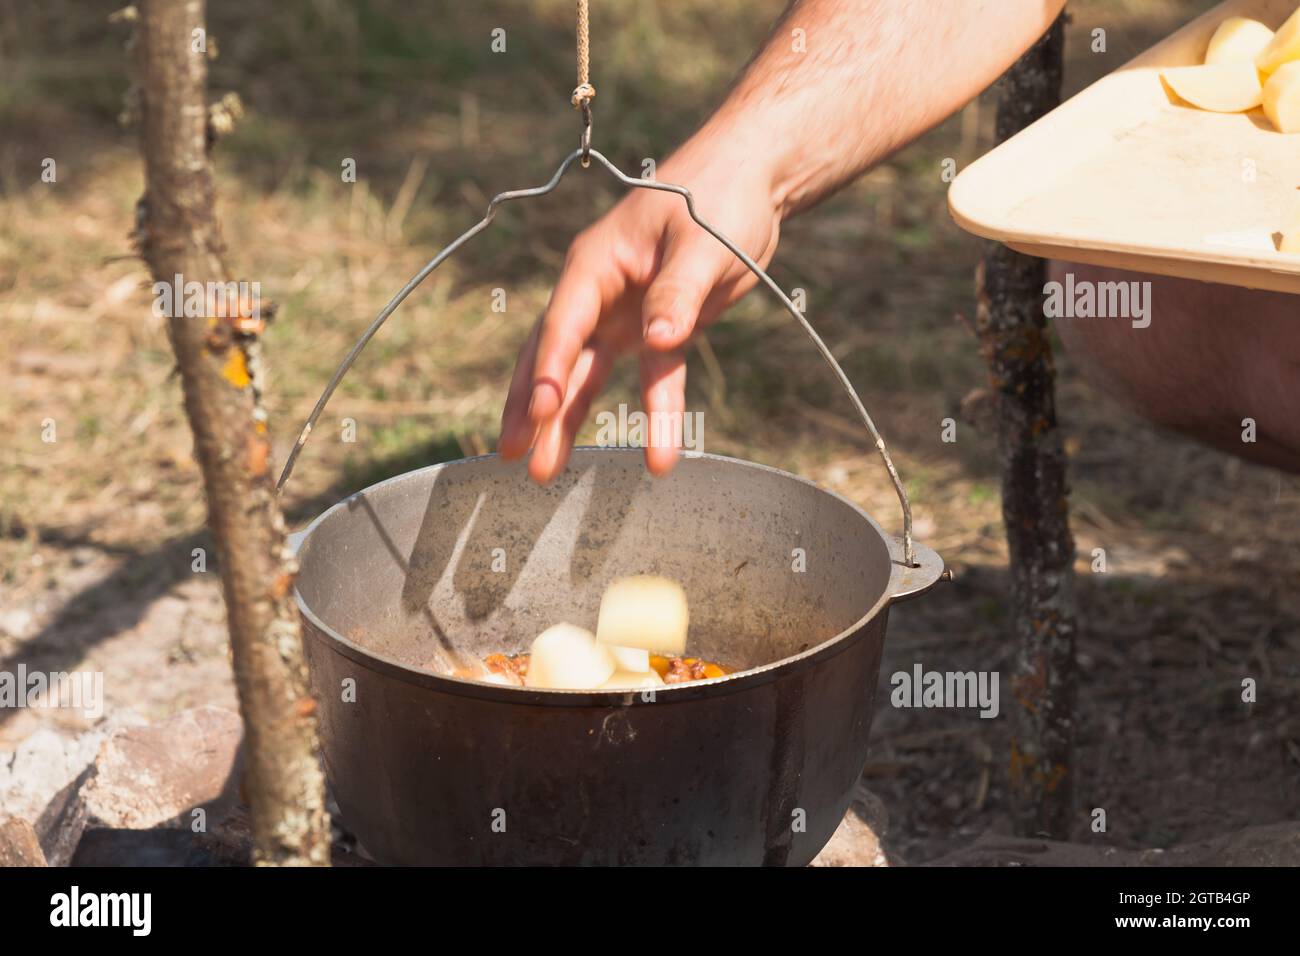 Männliche Hand tropft Kartoffeln in eine kochende Suppe. Kochen mit Kessel auf offenem Feuer, Campingmenü Stockfoto